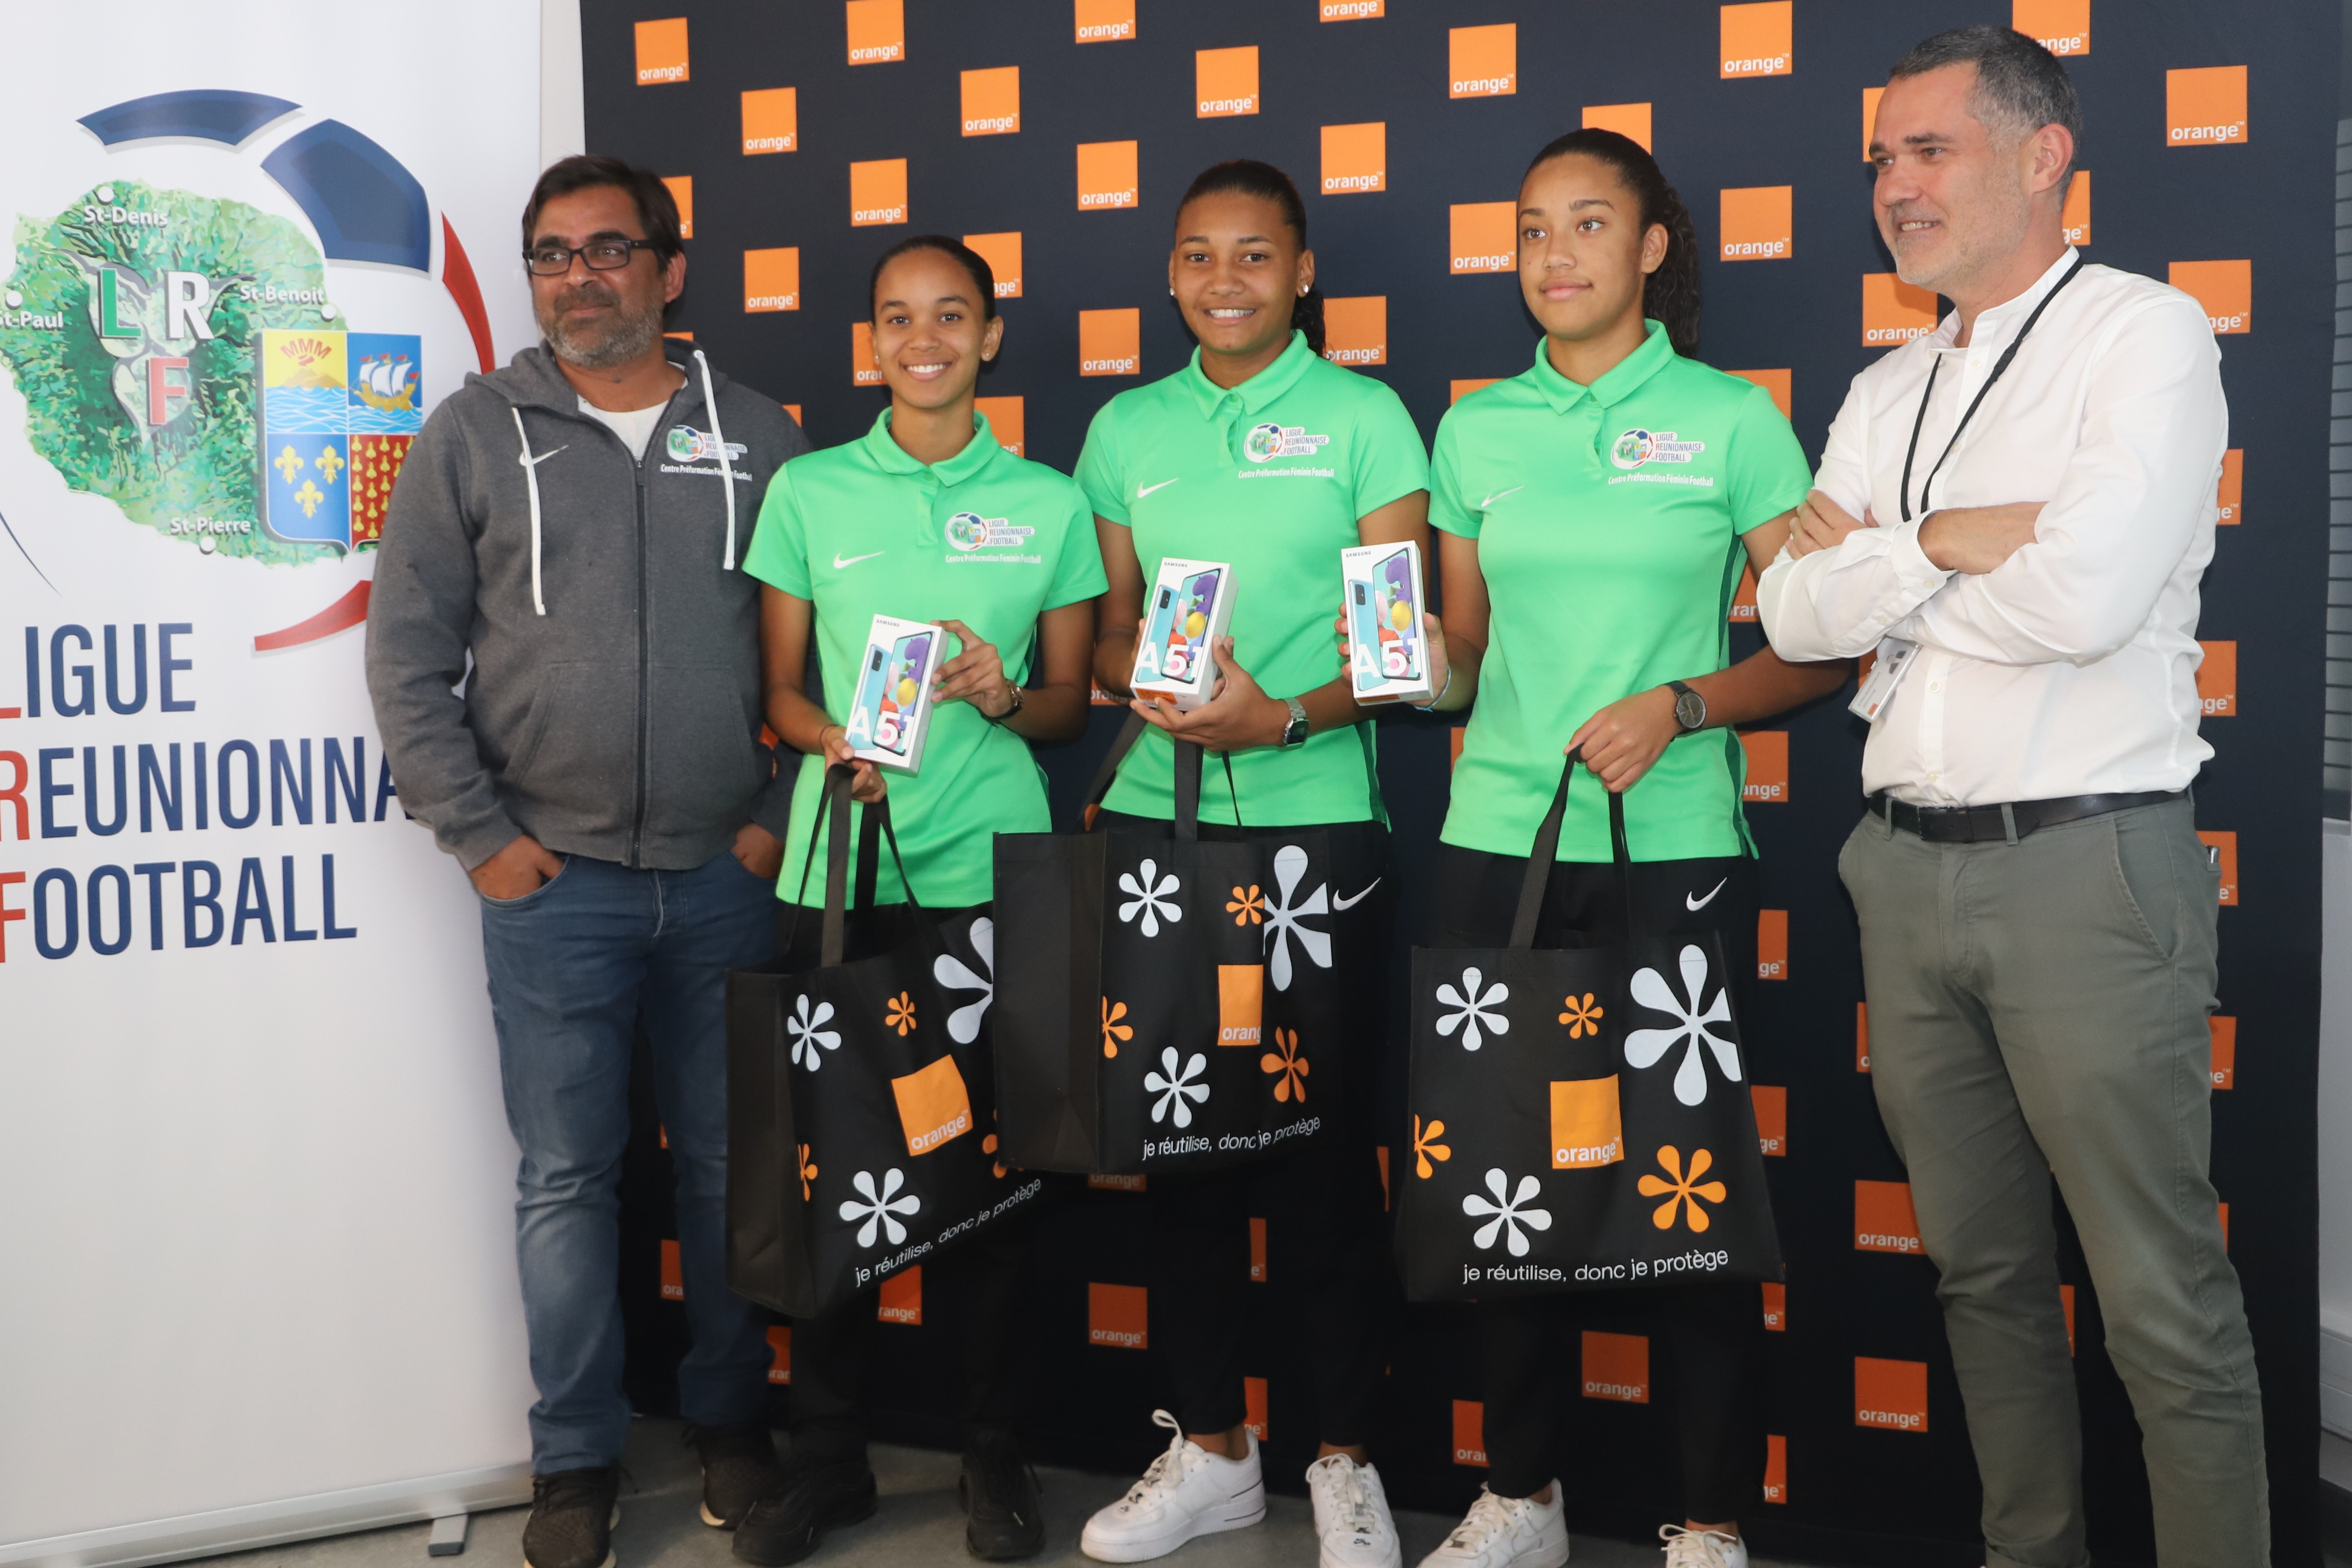 La Réunion: Orange apporte son soutien au foot féminin